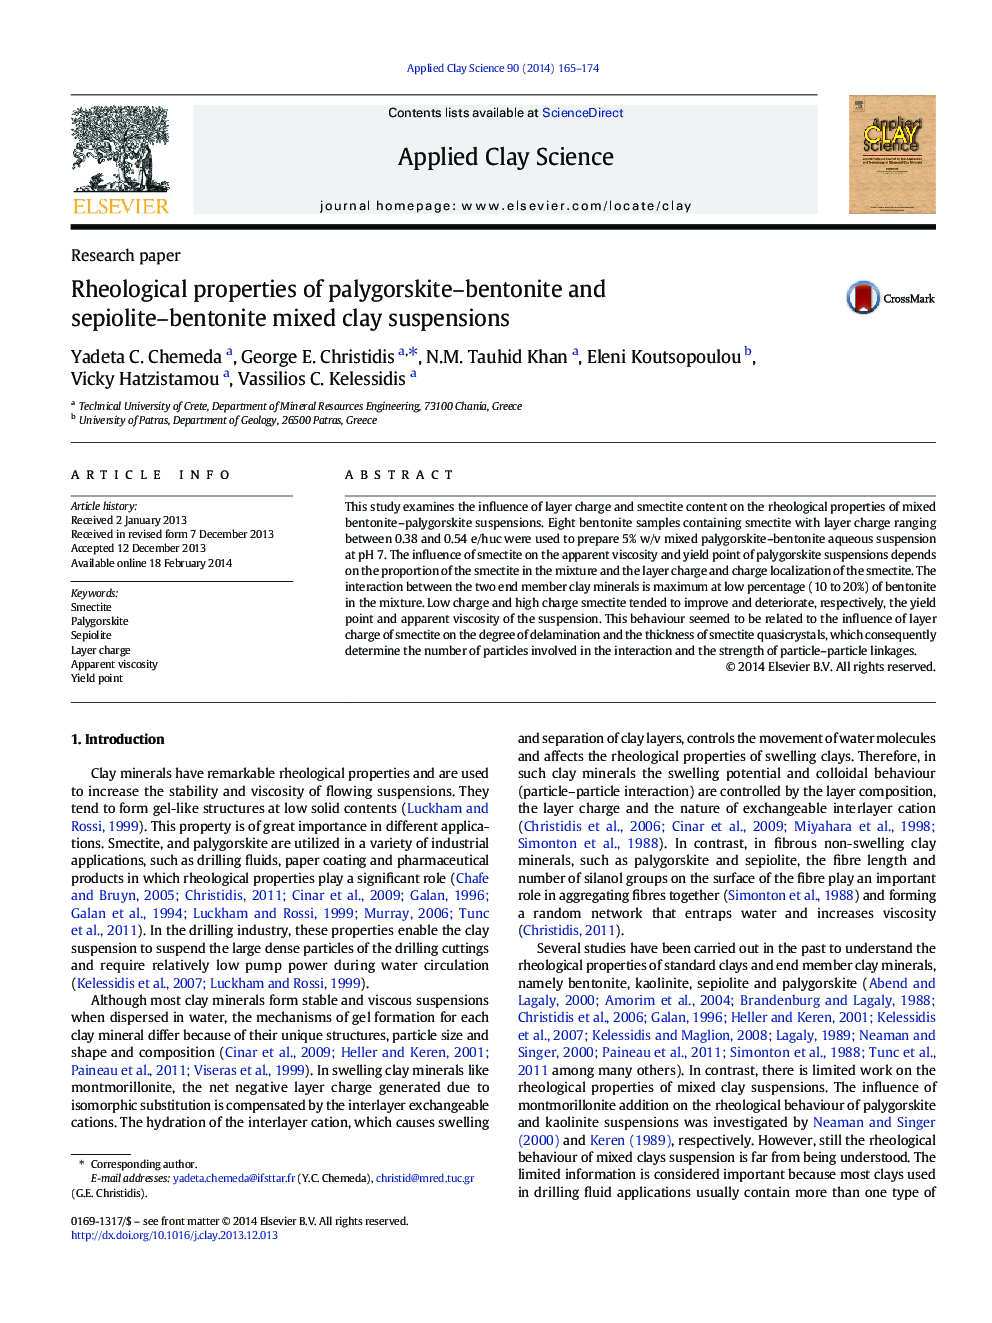 Rheological properties of palygorskite–bentonite and sepiolite–bentonite mixed clay suspensions